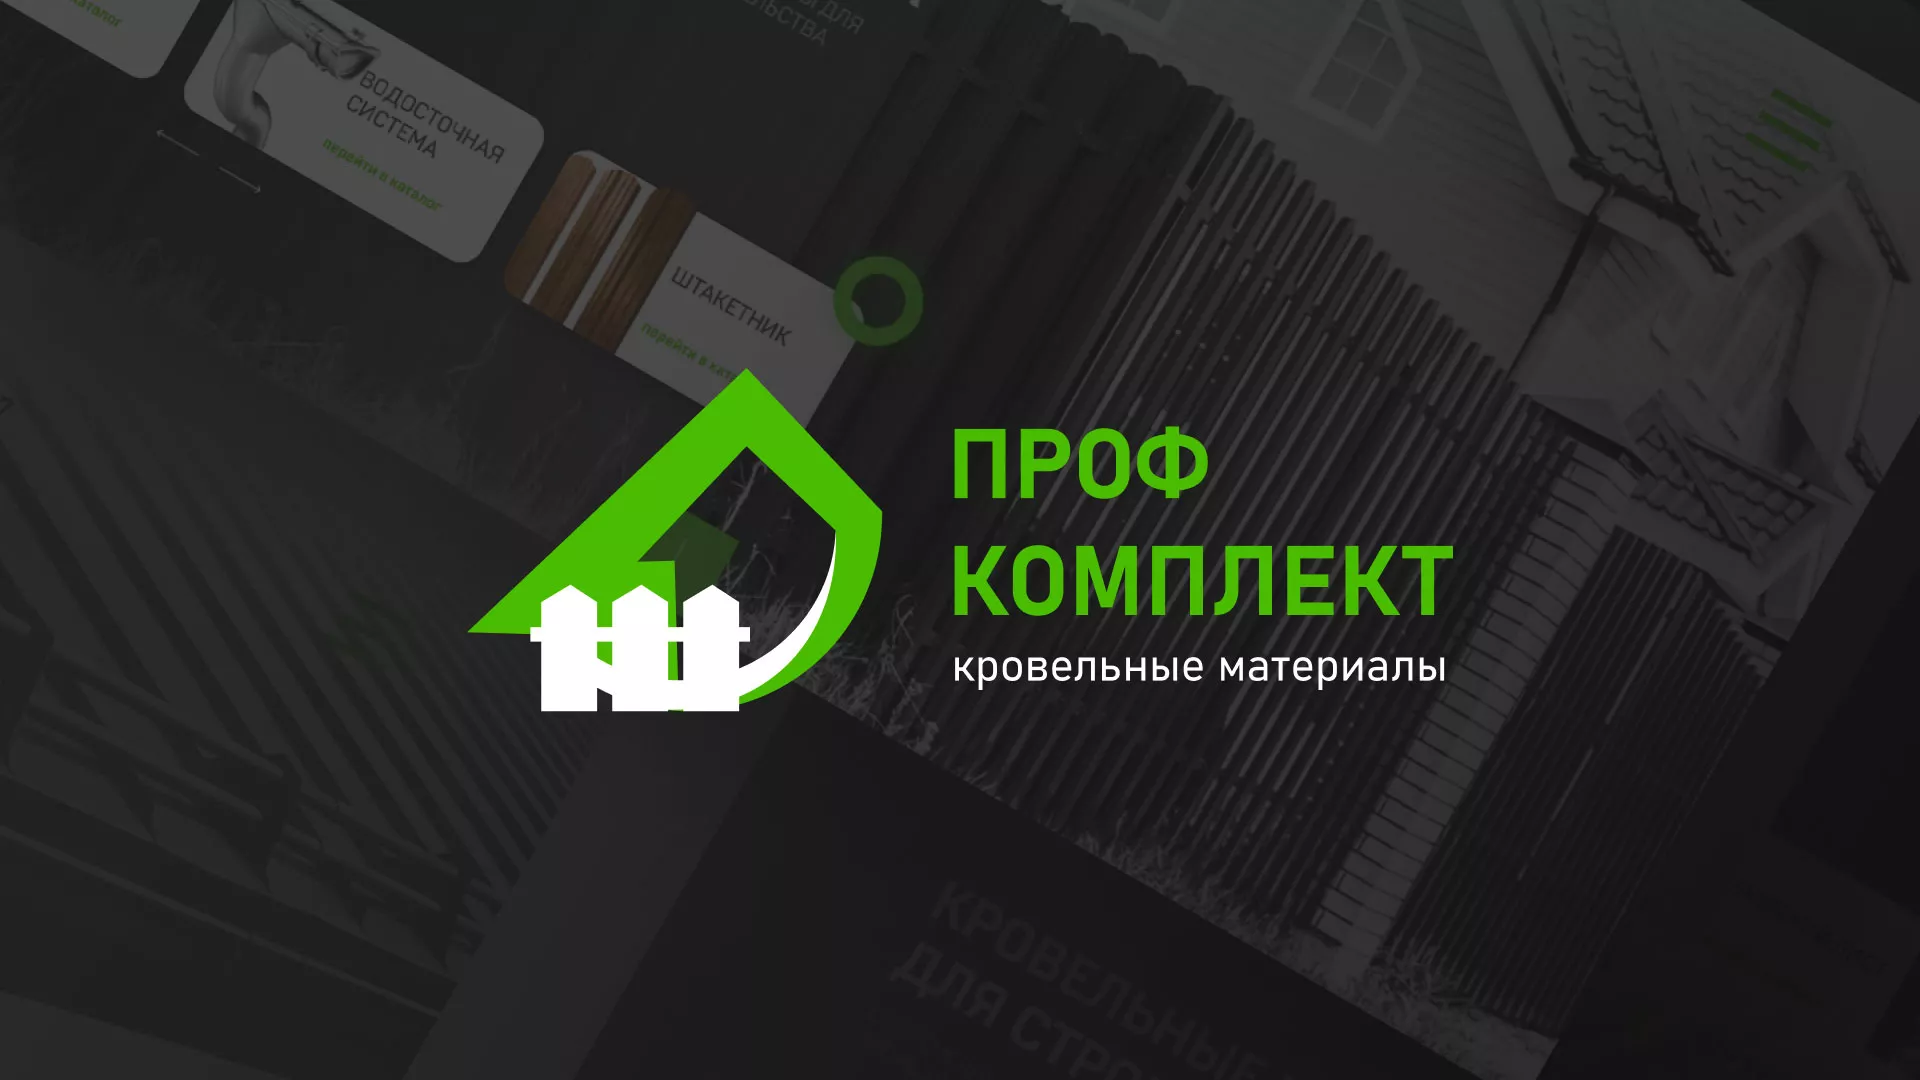 Создание сайта компании «Проф Комплект» в Опочке